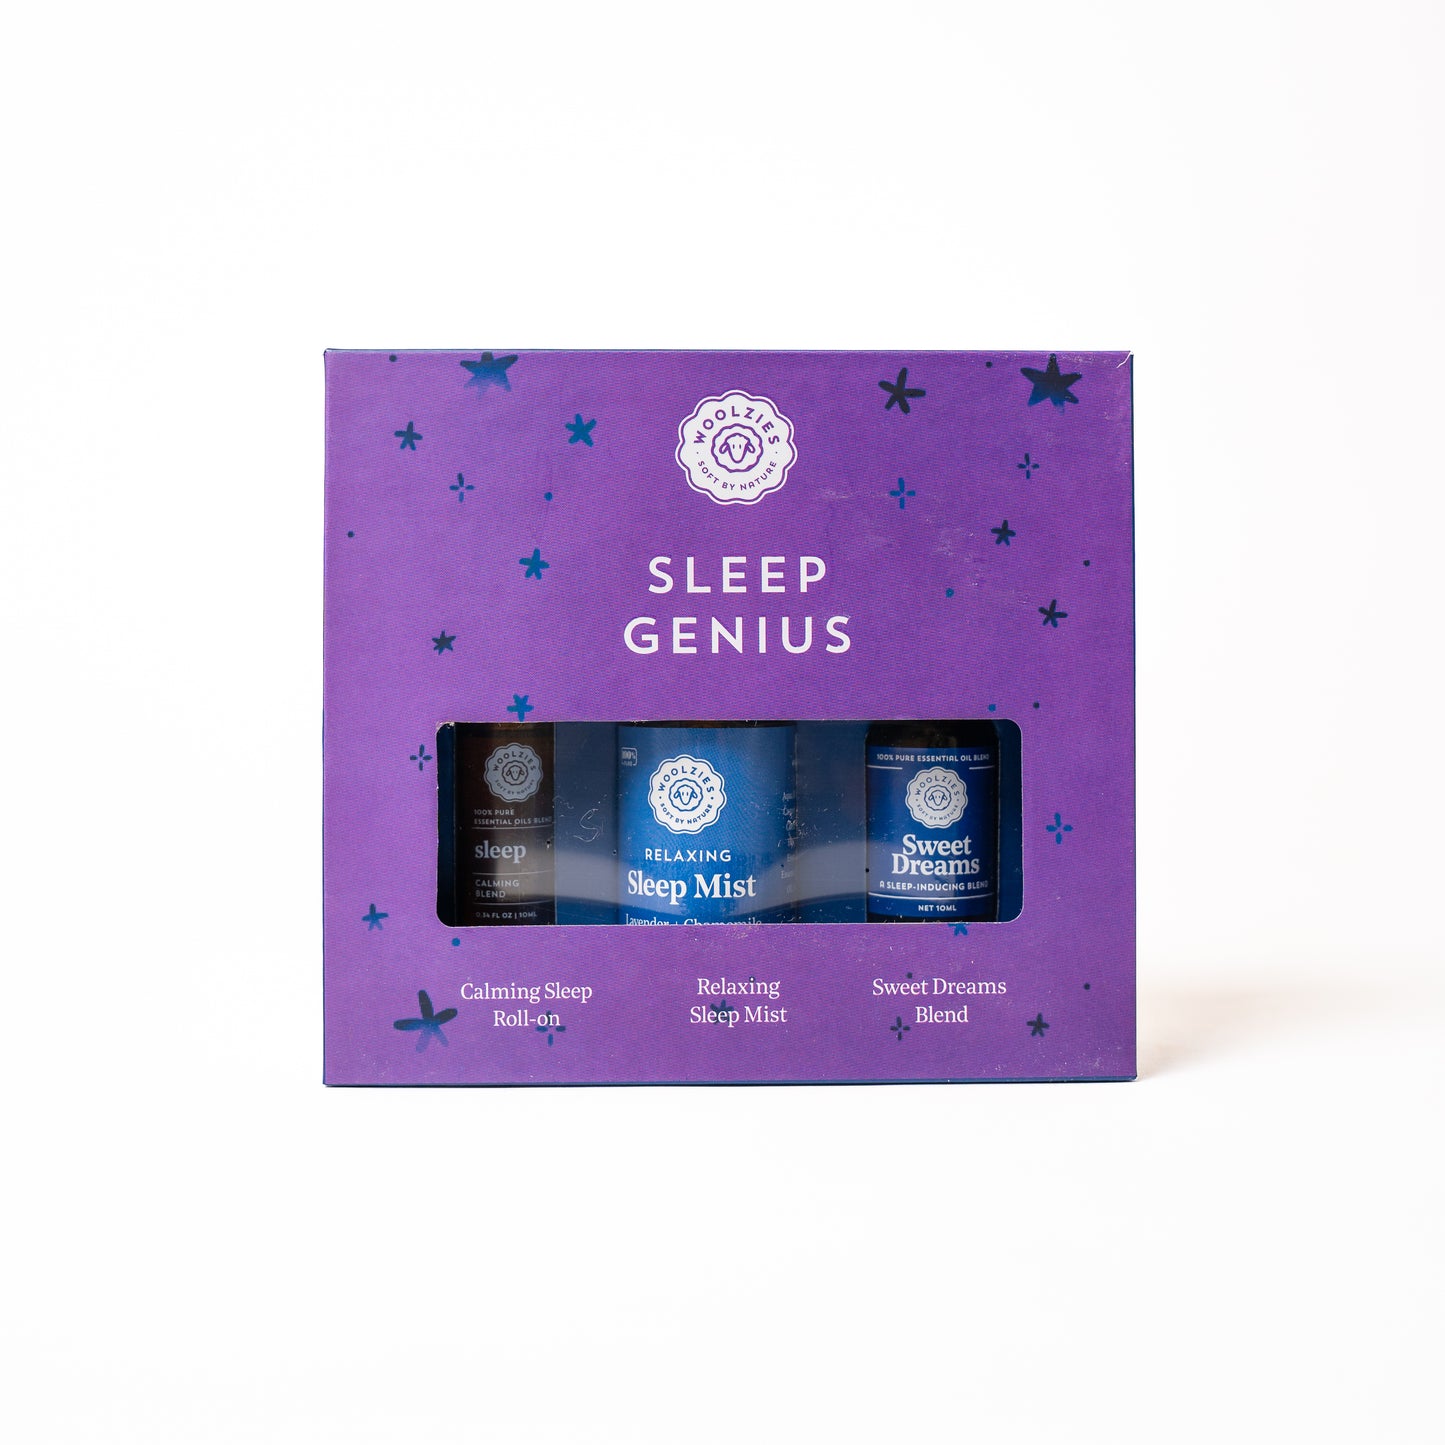 Sleep Genius essential oil, roll on & mist